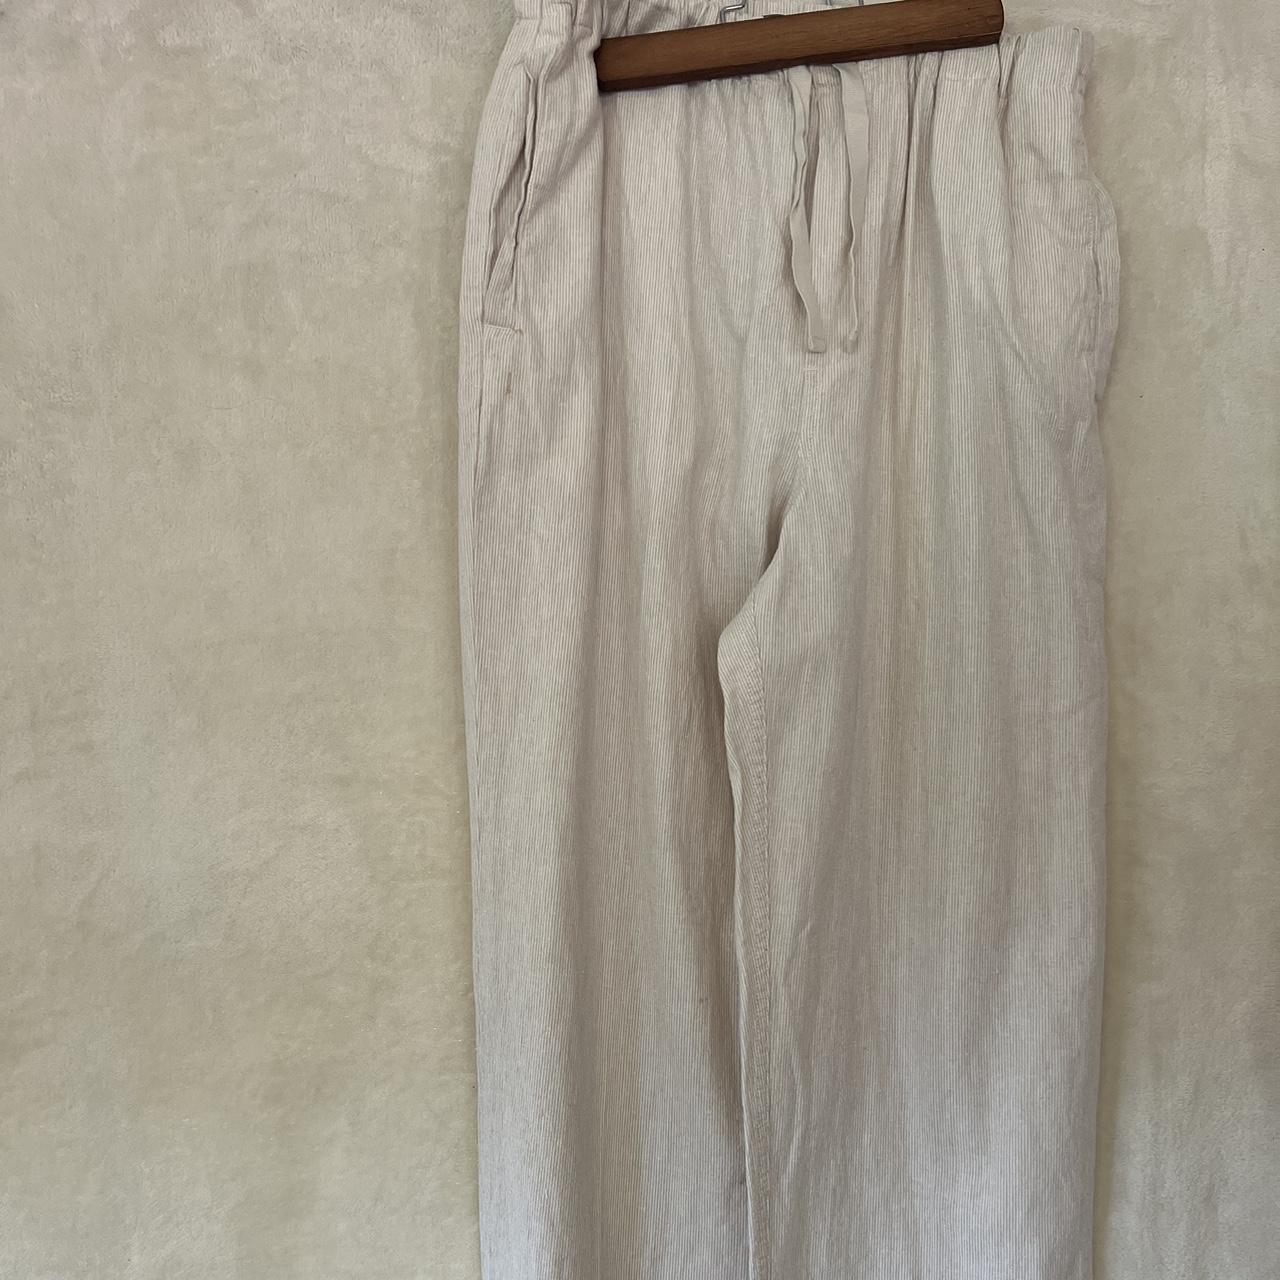 Basic Editions white linen capri pants Slightly see - Depop